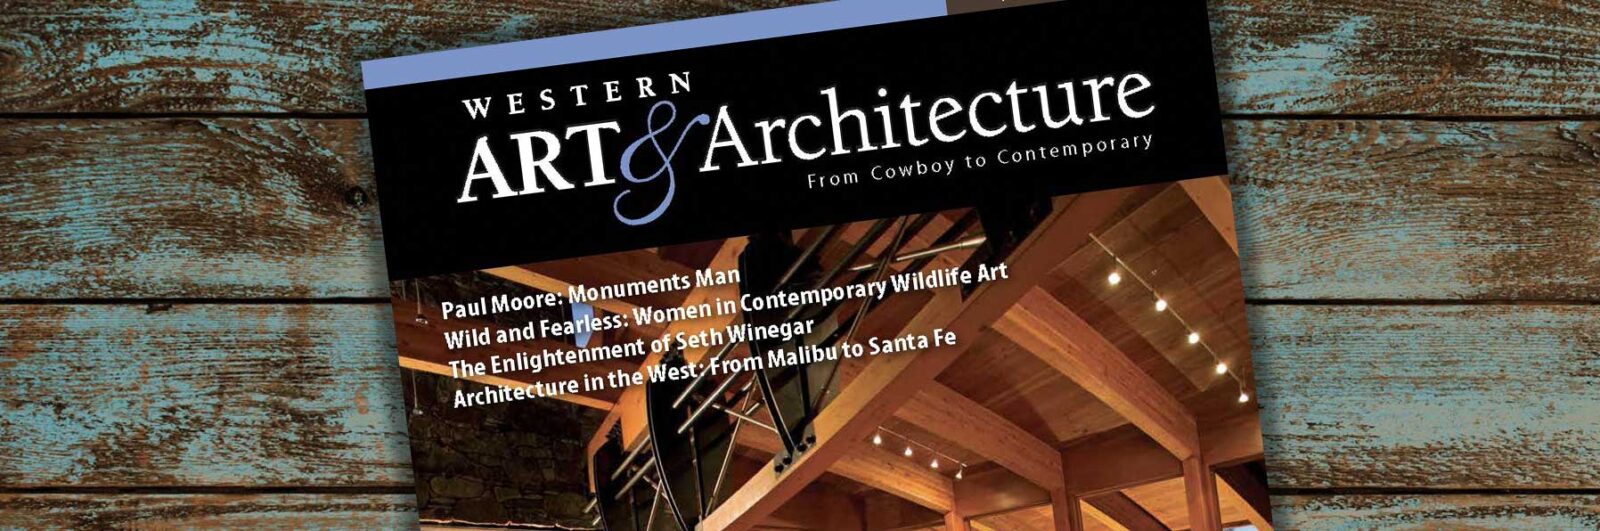 Western Art Architecture Magazine